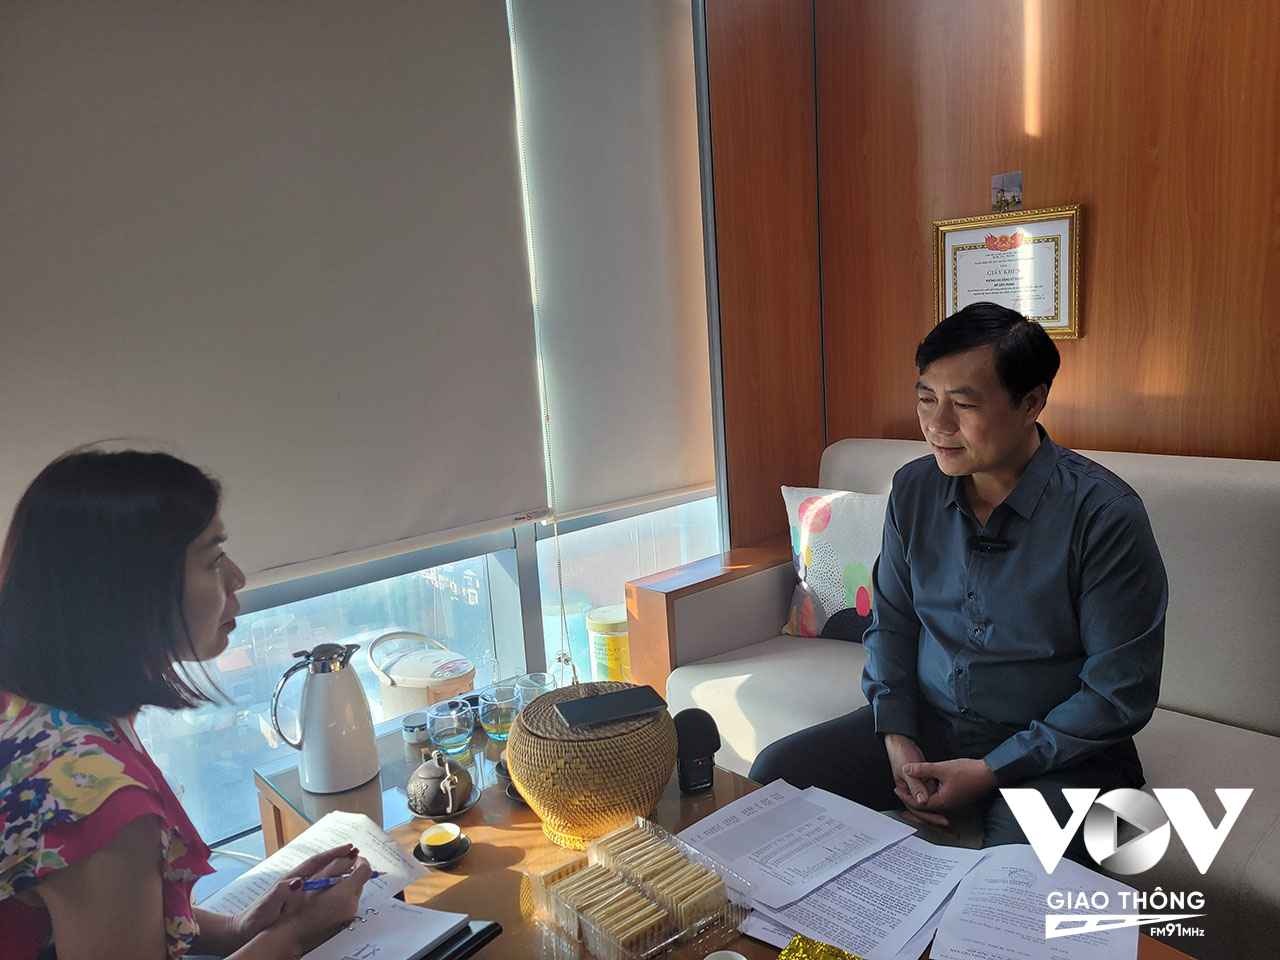 Đại diện Sở Xây dựng Hà Nội cho biết, theo báo cáo từ Sở Y tế, các thông số kiểm nghiệm chất lượng nước sạch ở Hà Nội 'về cơ bản' đều đạt